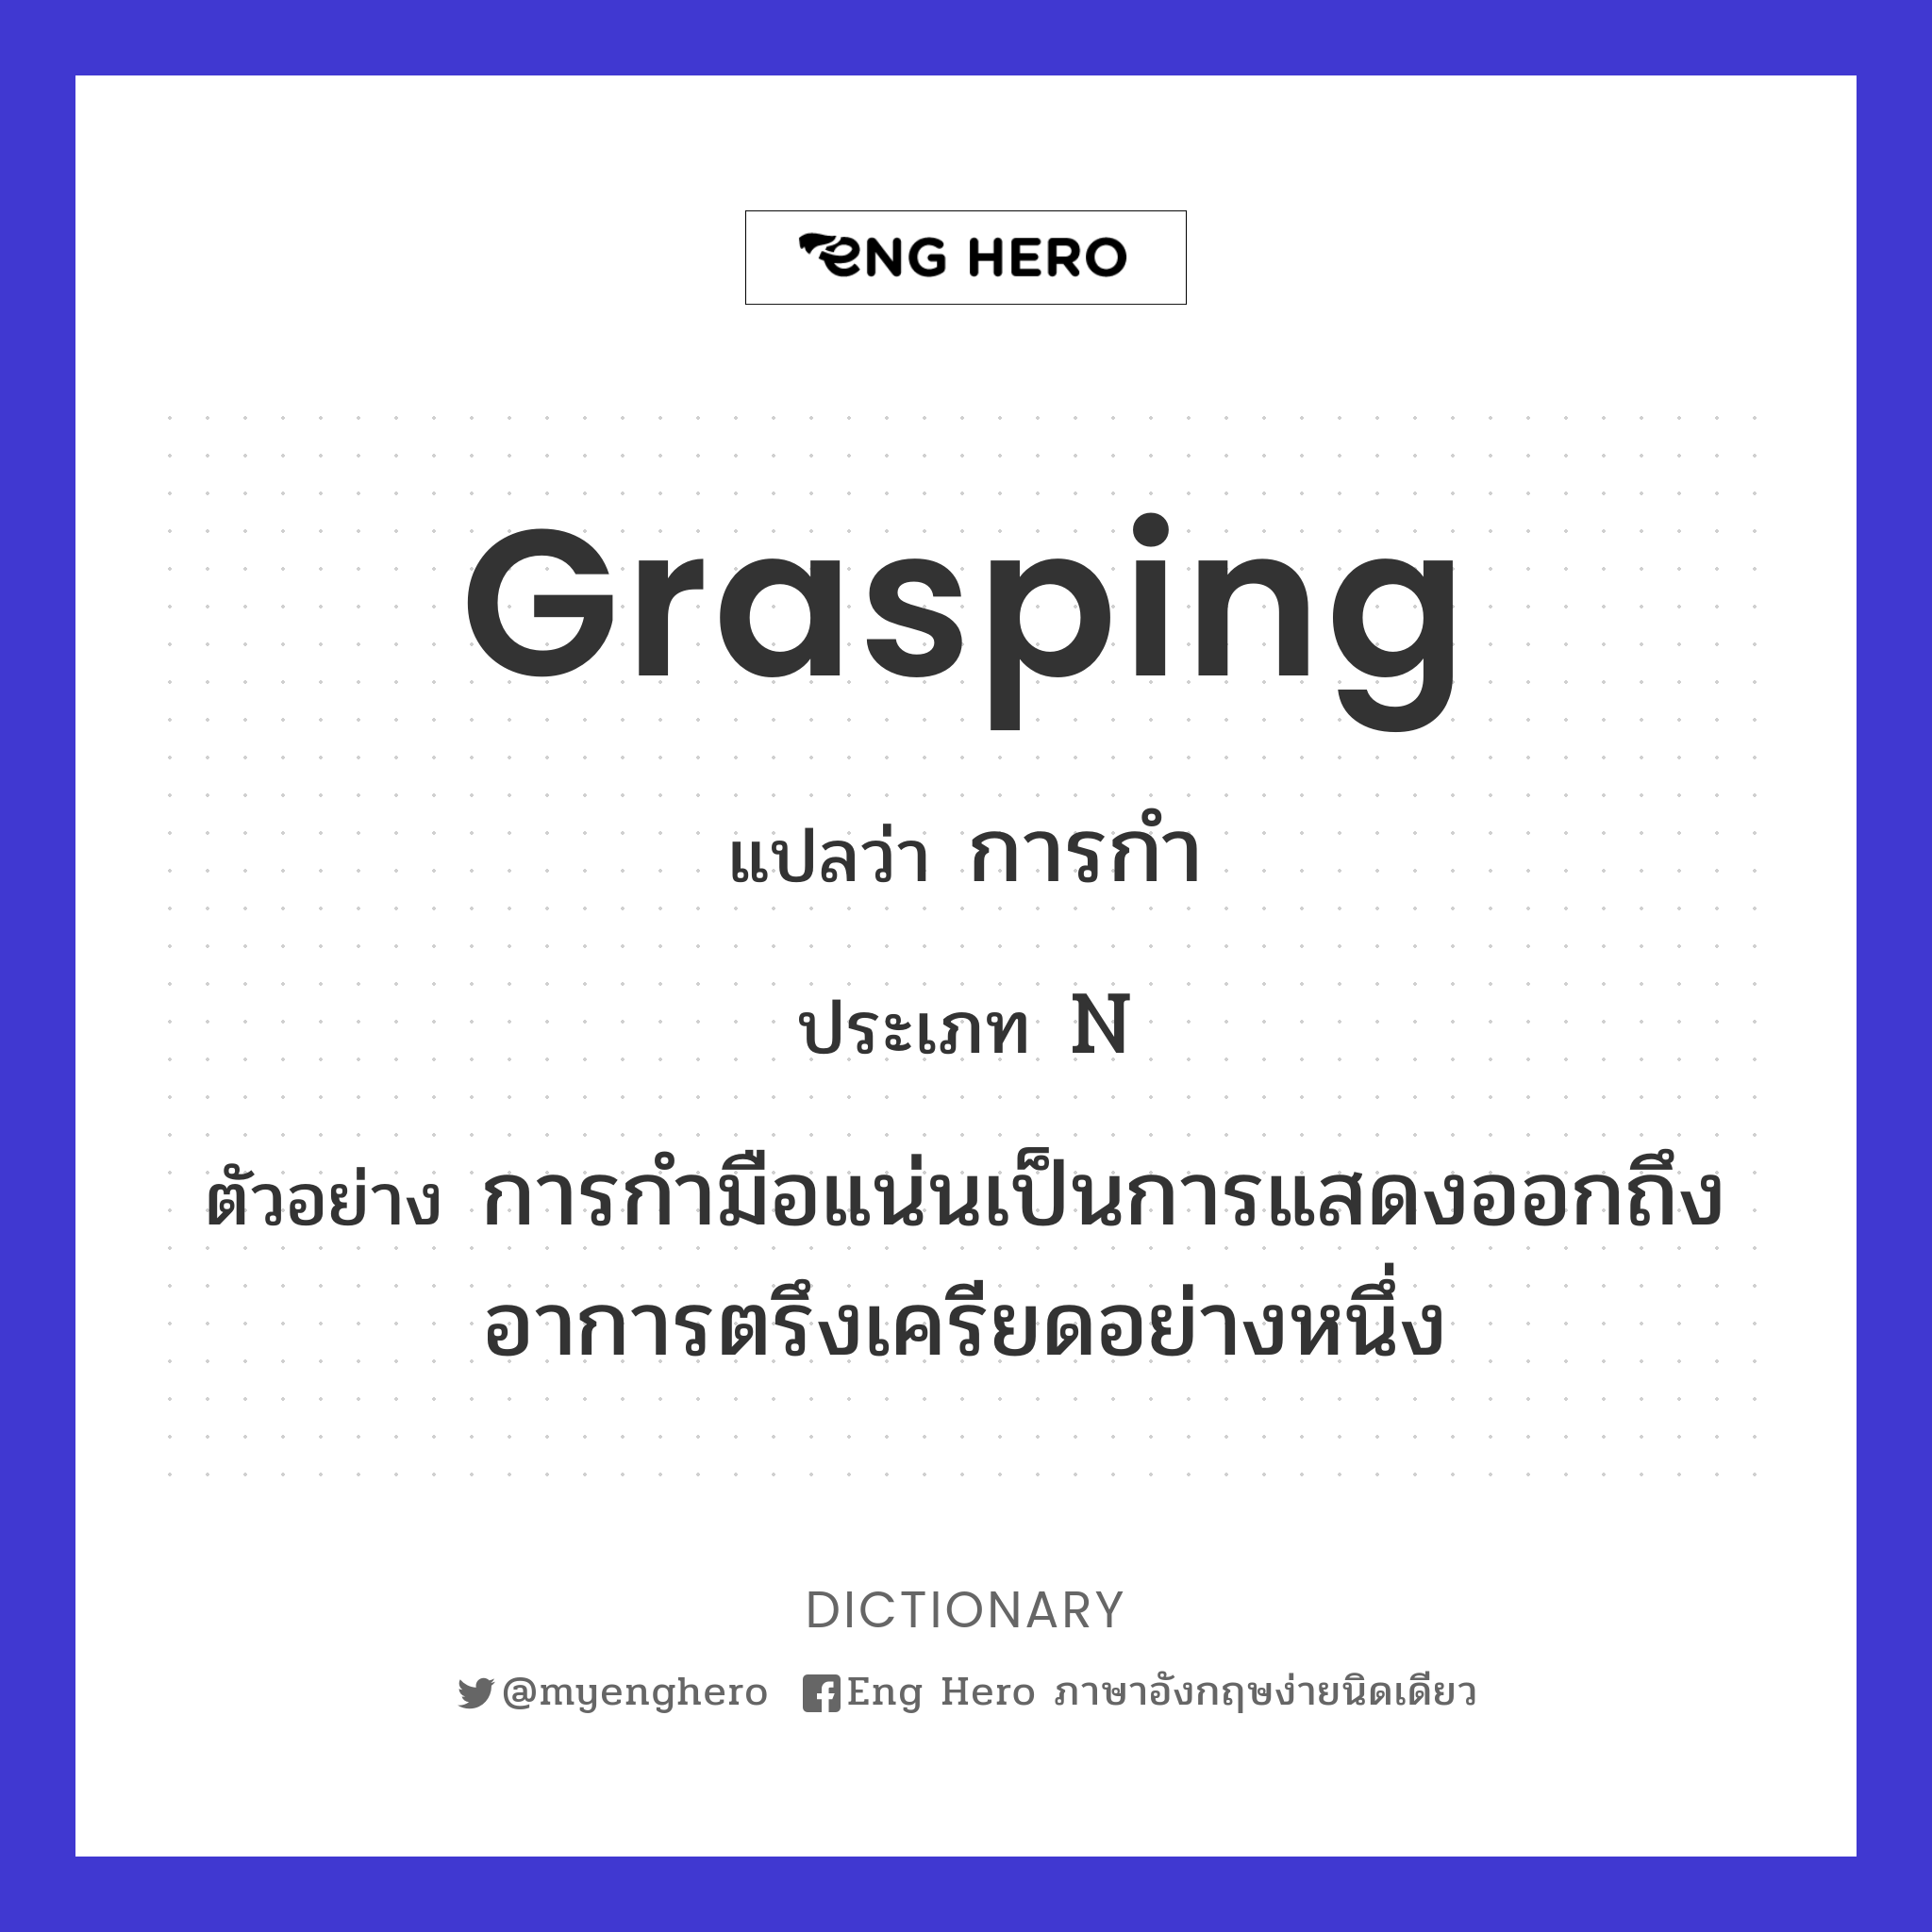 grasping